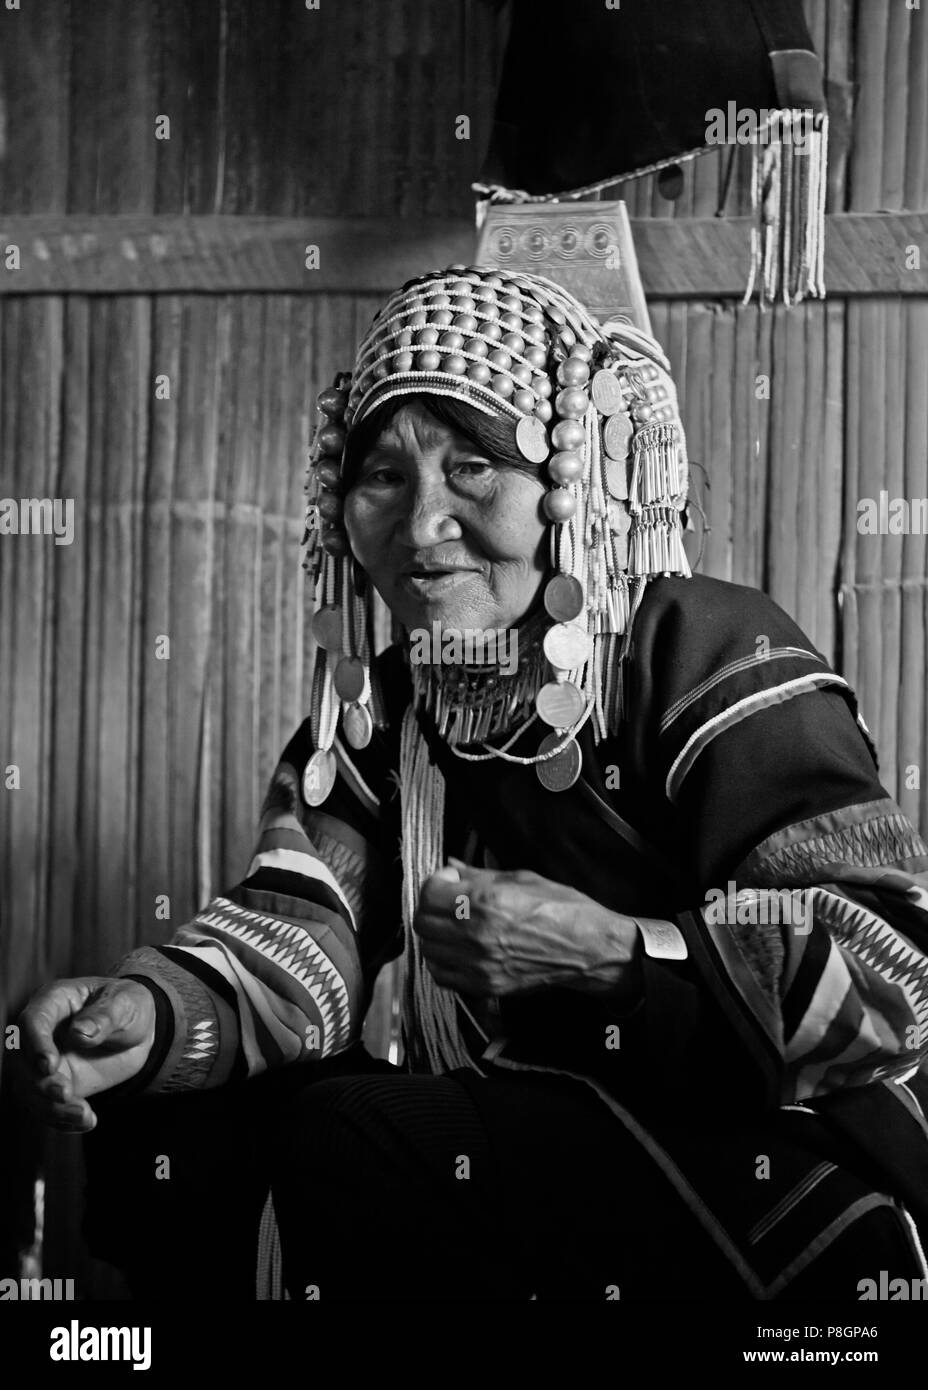 Frauen Der akha Stamm tragen mit prächtigem Kopfschmuck aus Perlen, Silbermünzen und Hand gewebt Baumwolle - Dorf in der Nähe von kengtung oder KYAINGTONG - MYANMAR Stockfoto